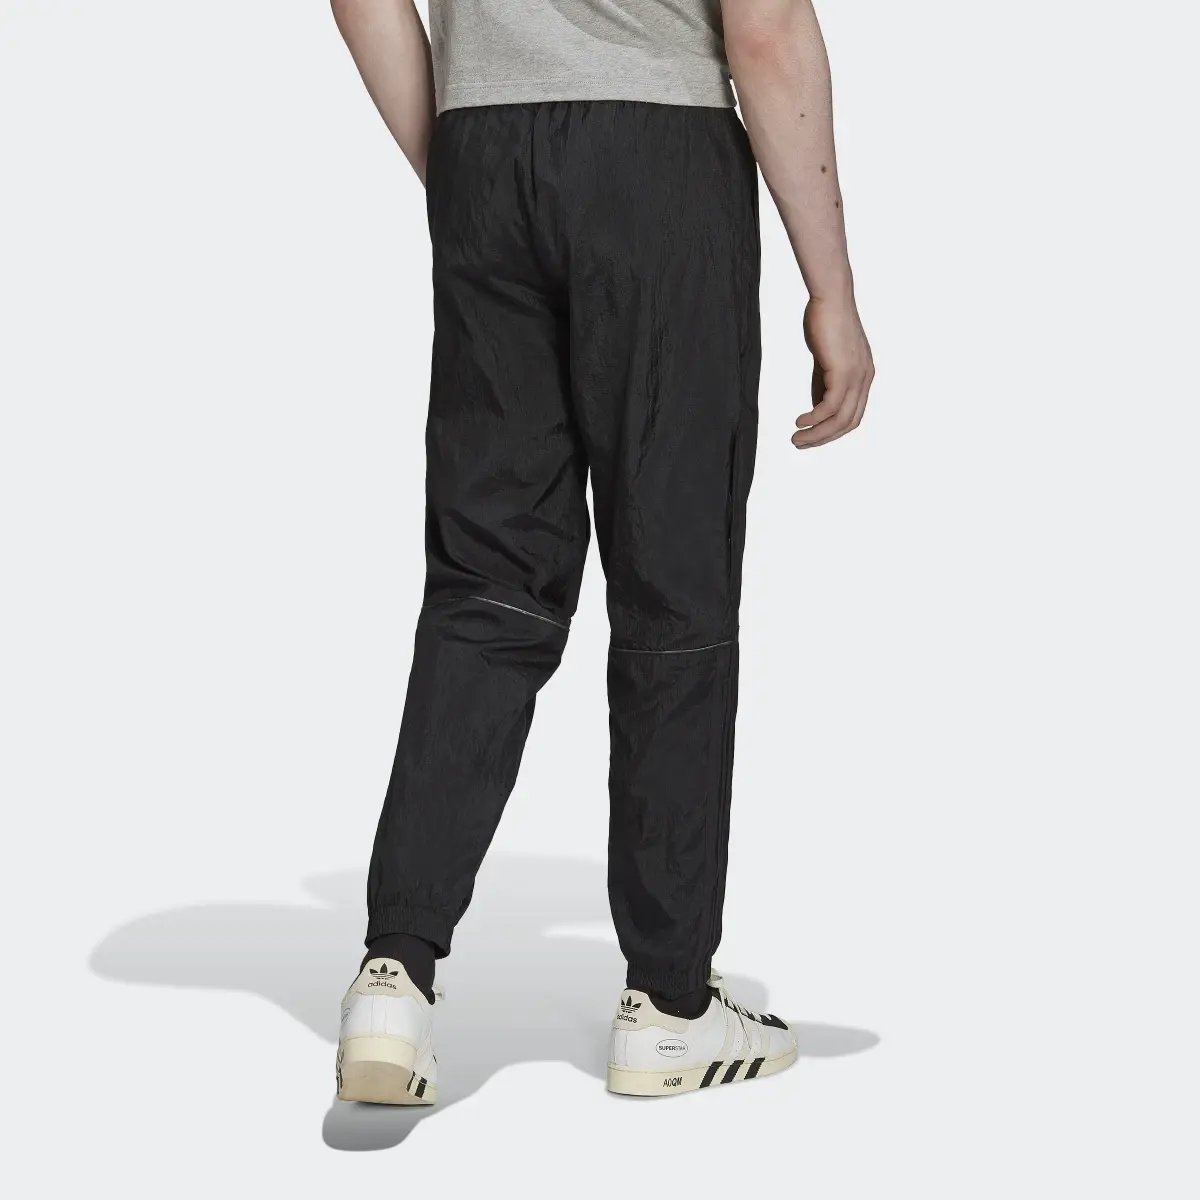 Adidas Pantalón Reveal Material Mix. 2